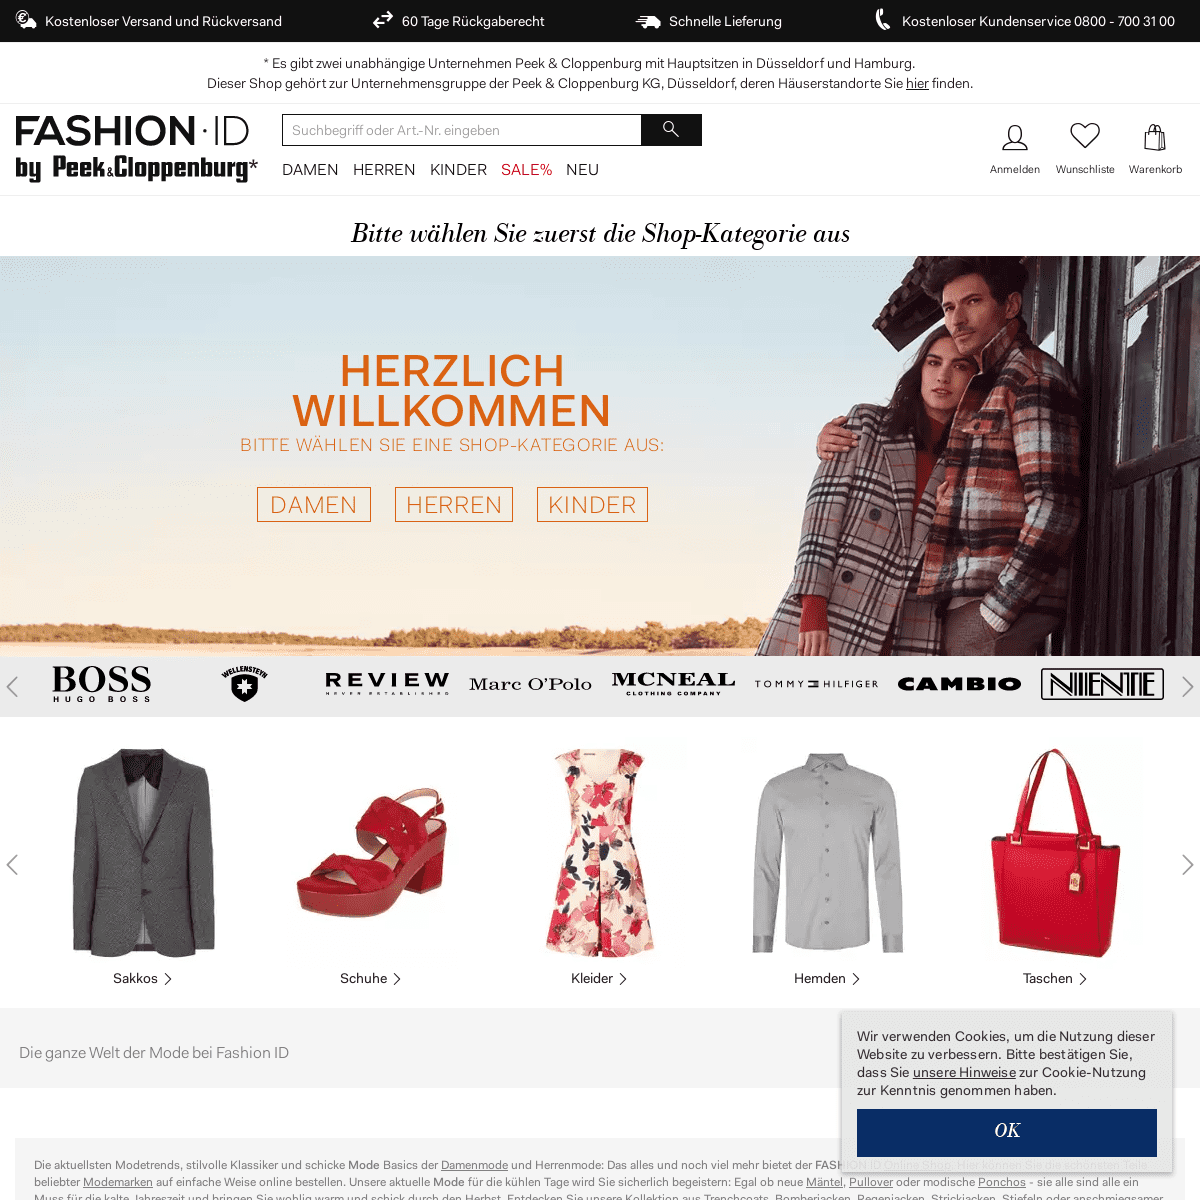 Fashion Online Shop- Aktuelle Herbstmode im Online Shop kaufen - FASHION ID Online Shop